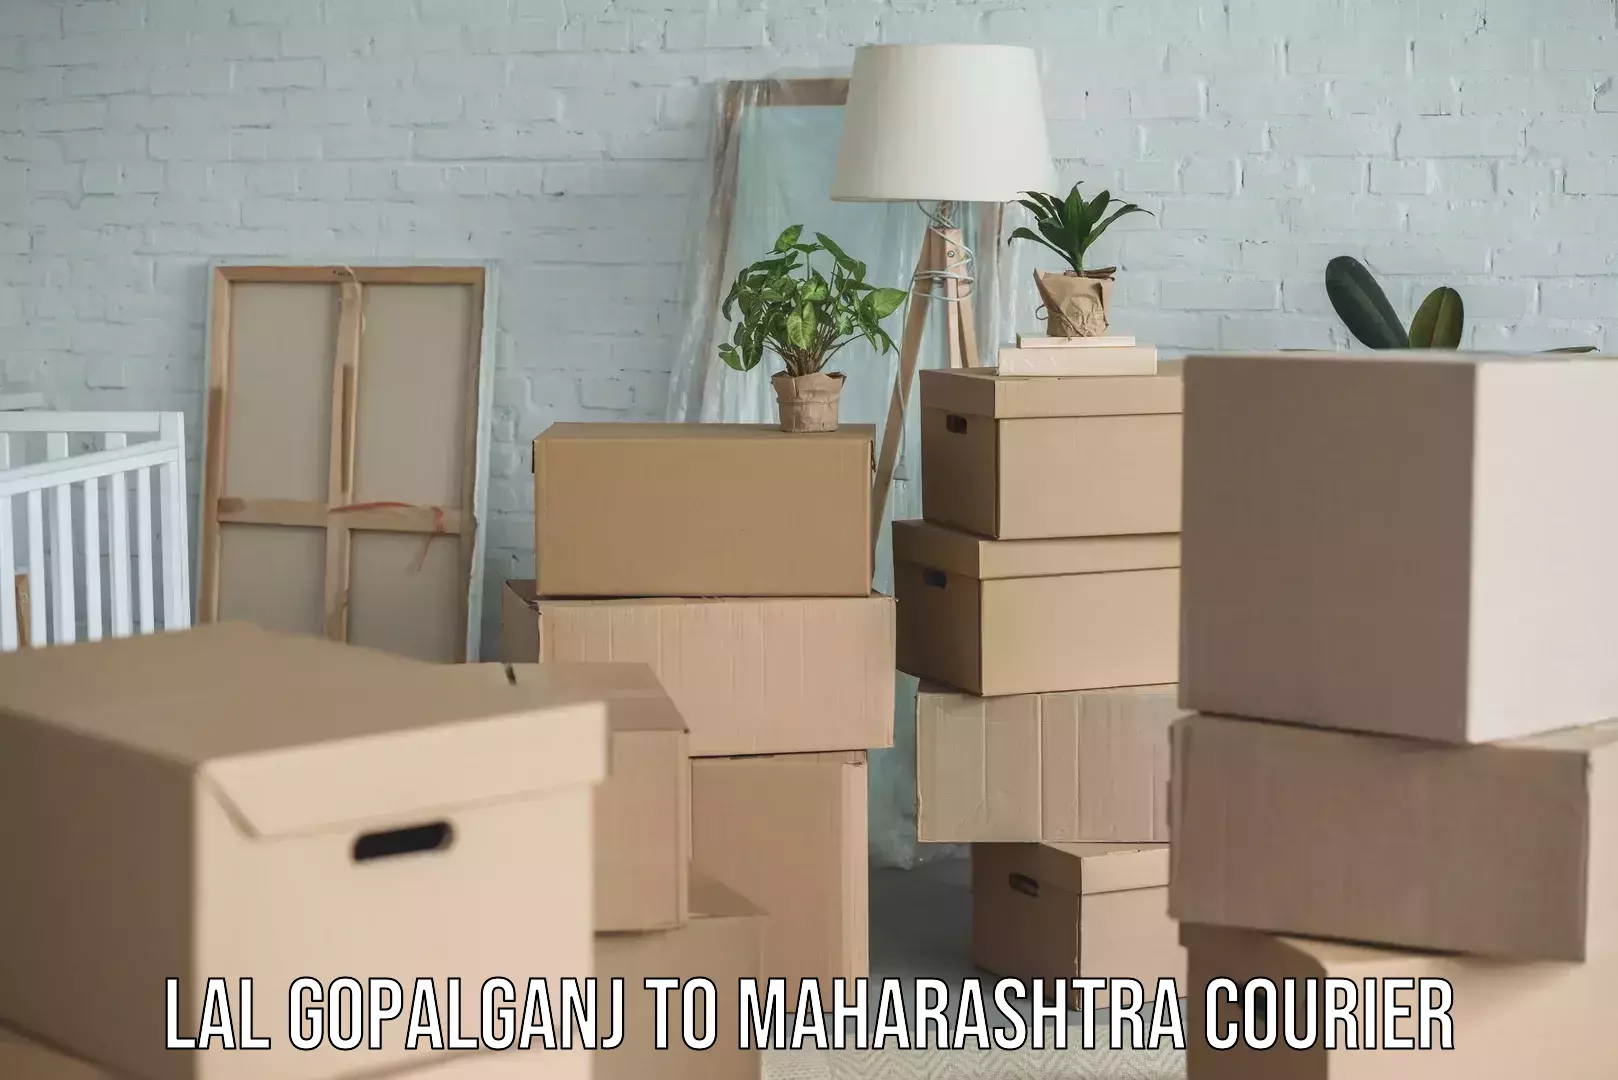 Household moving experts Lal Gopalganj to Maharashtra